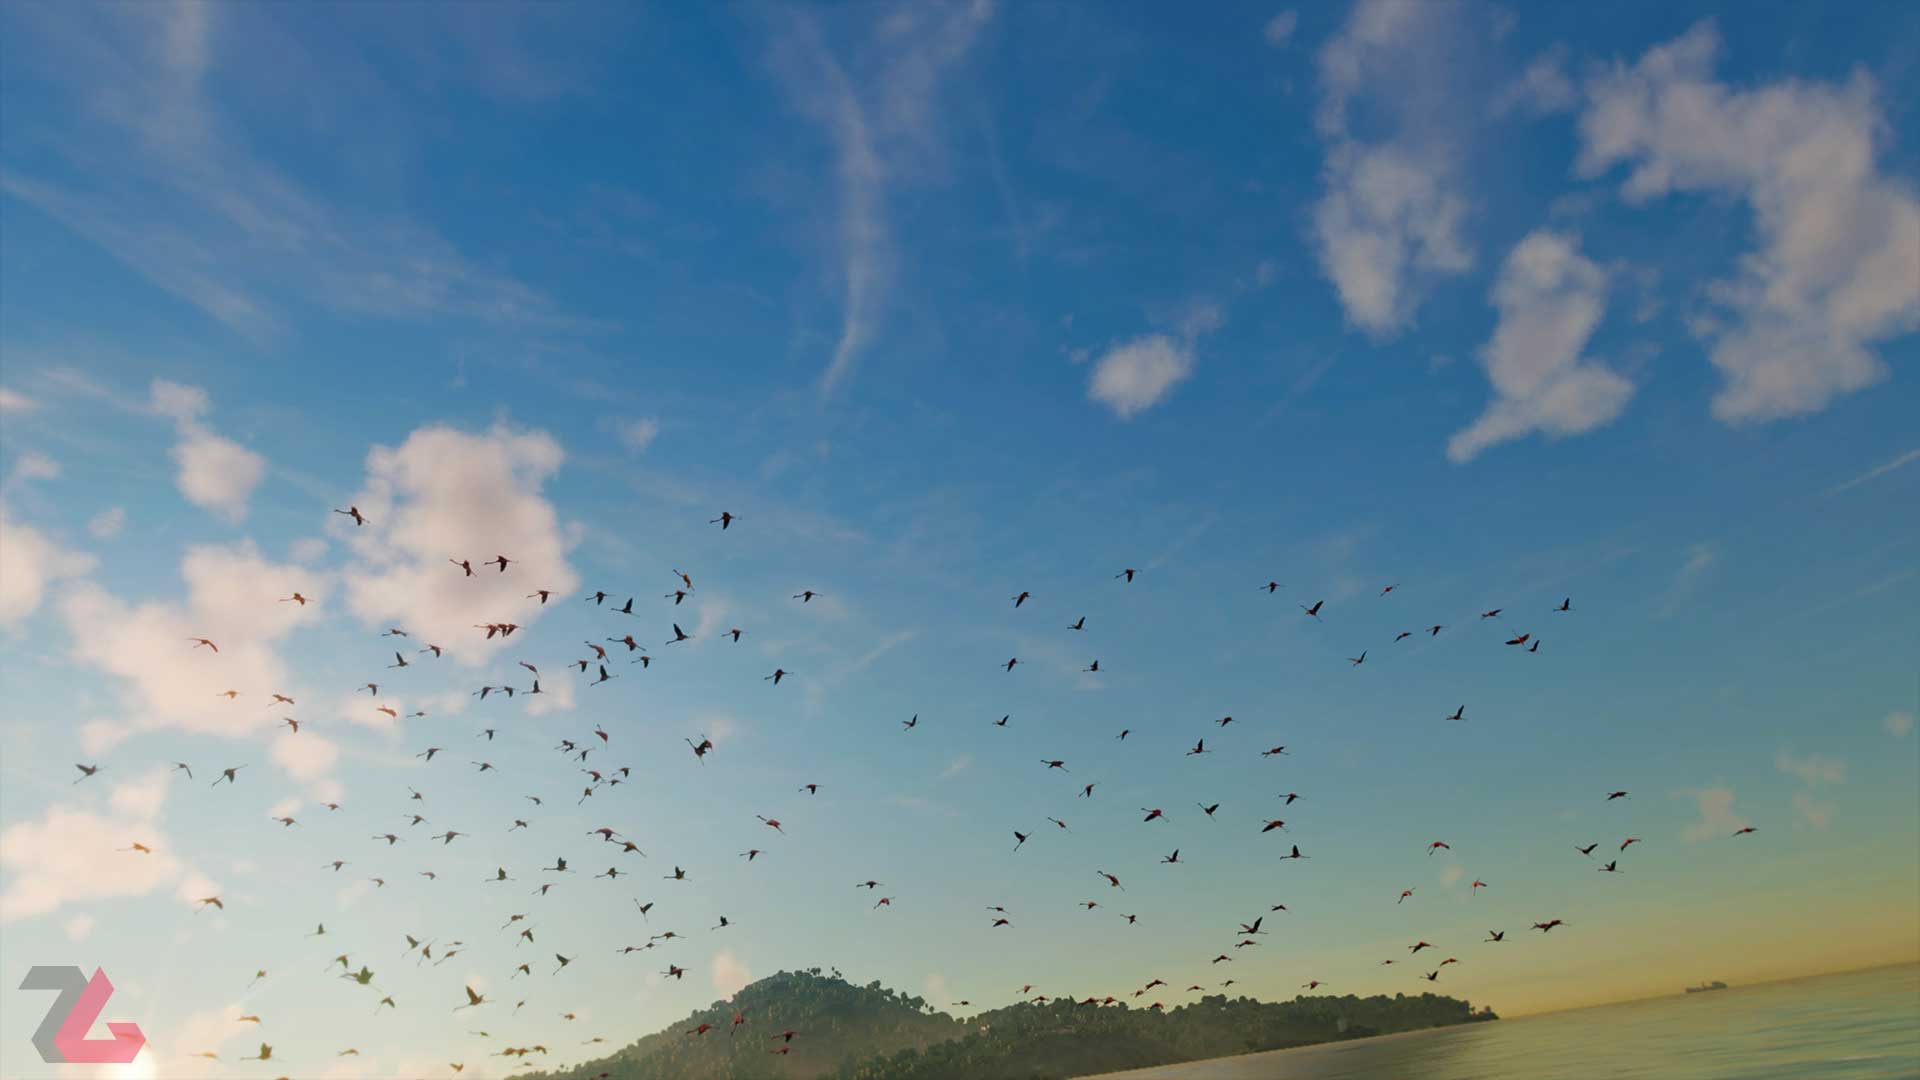 پرواز گروهی پرندگان در آسمان کشور یارا بازی فار کرای 6 یوبیسافت